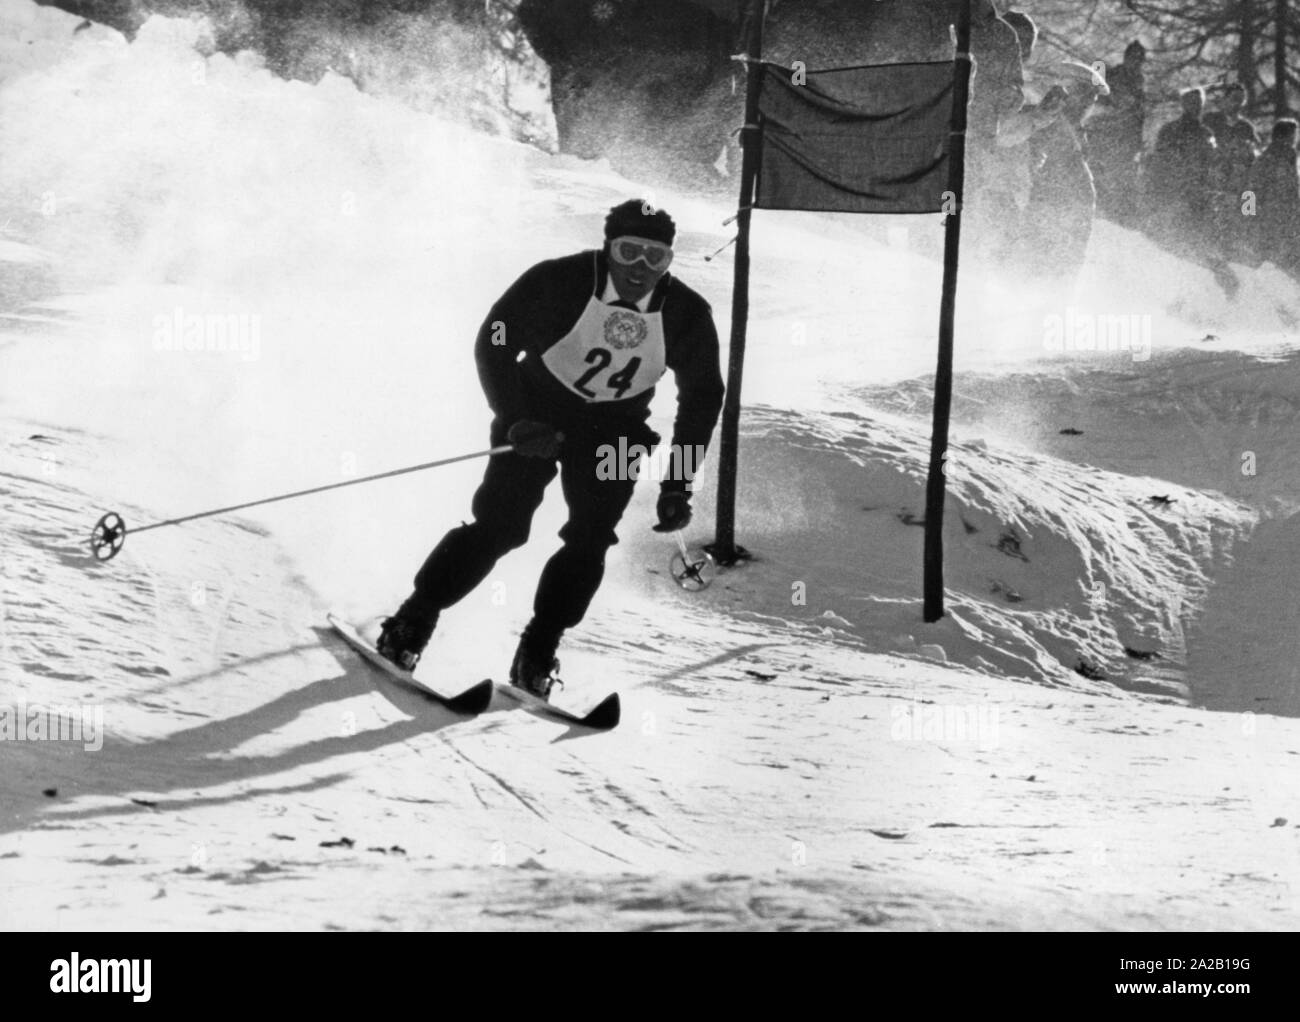 La foto muestra a un participante en el slalom gigante en los Juegos Olímpicos de Invierno de 1956 en Cortina d'Ampezzo. Es el polo de Josef Marusarz, que seguían sin posibilidad de medalla. Foto de stock